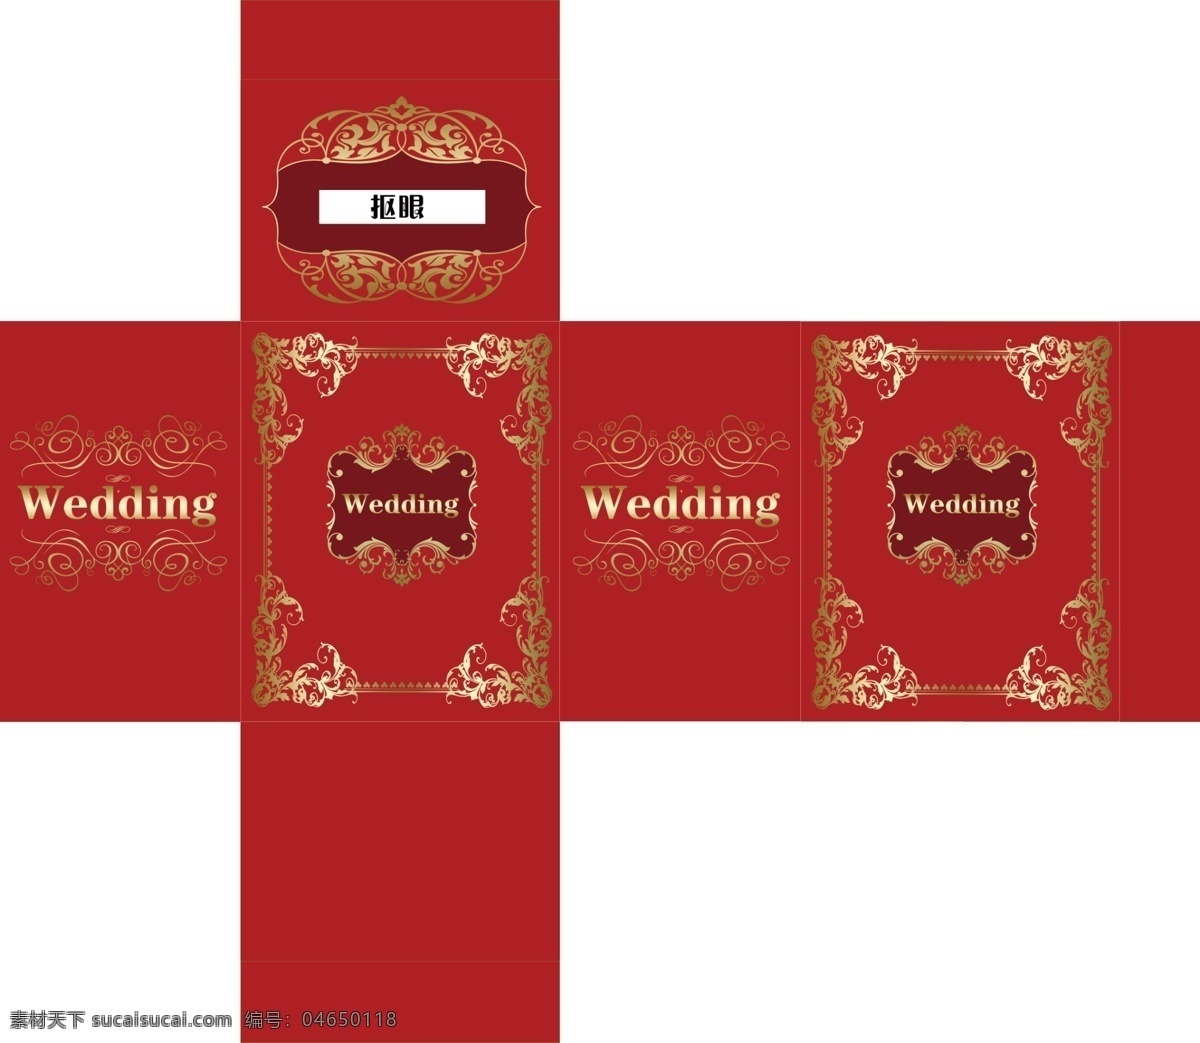 婚礼礼金箱 钱箱 婚礼设计 大红色 礼金箱 中式婚礼 分层